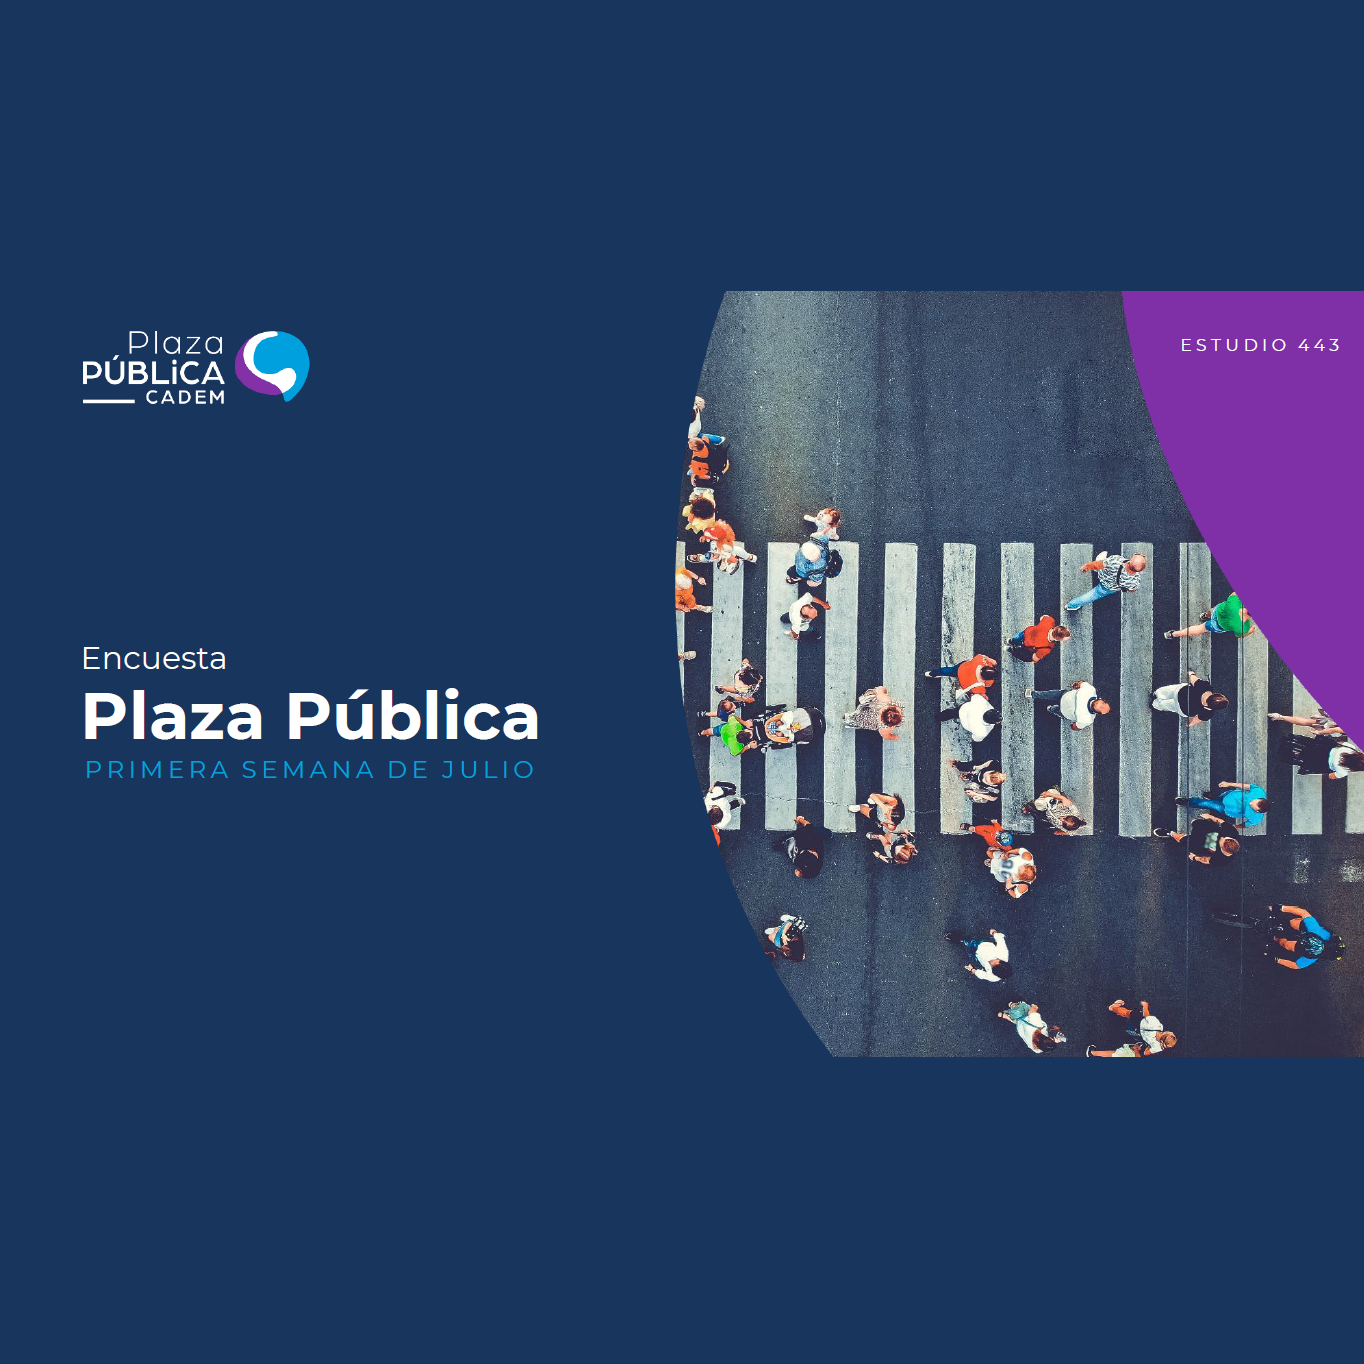 Estudio: Plaza pública Cadem – Primera semana de julio